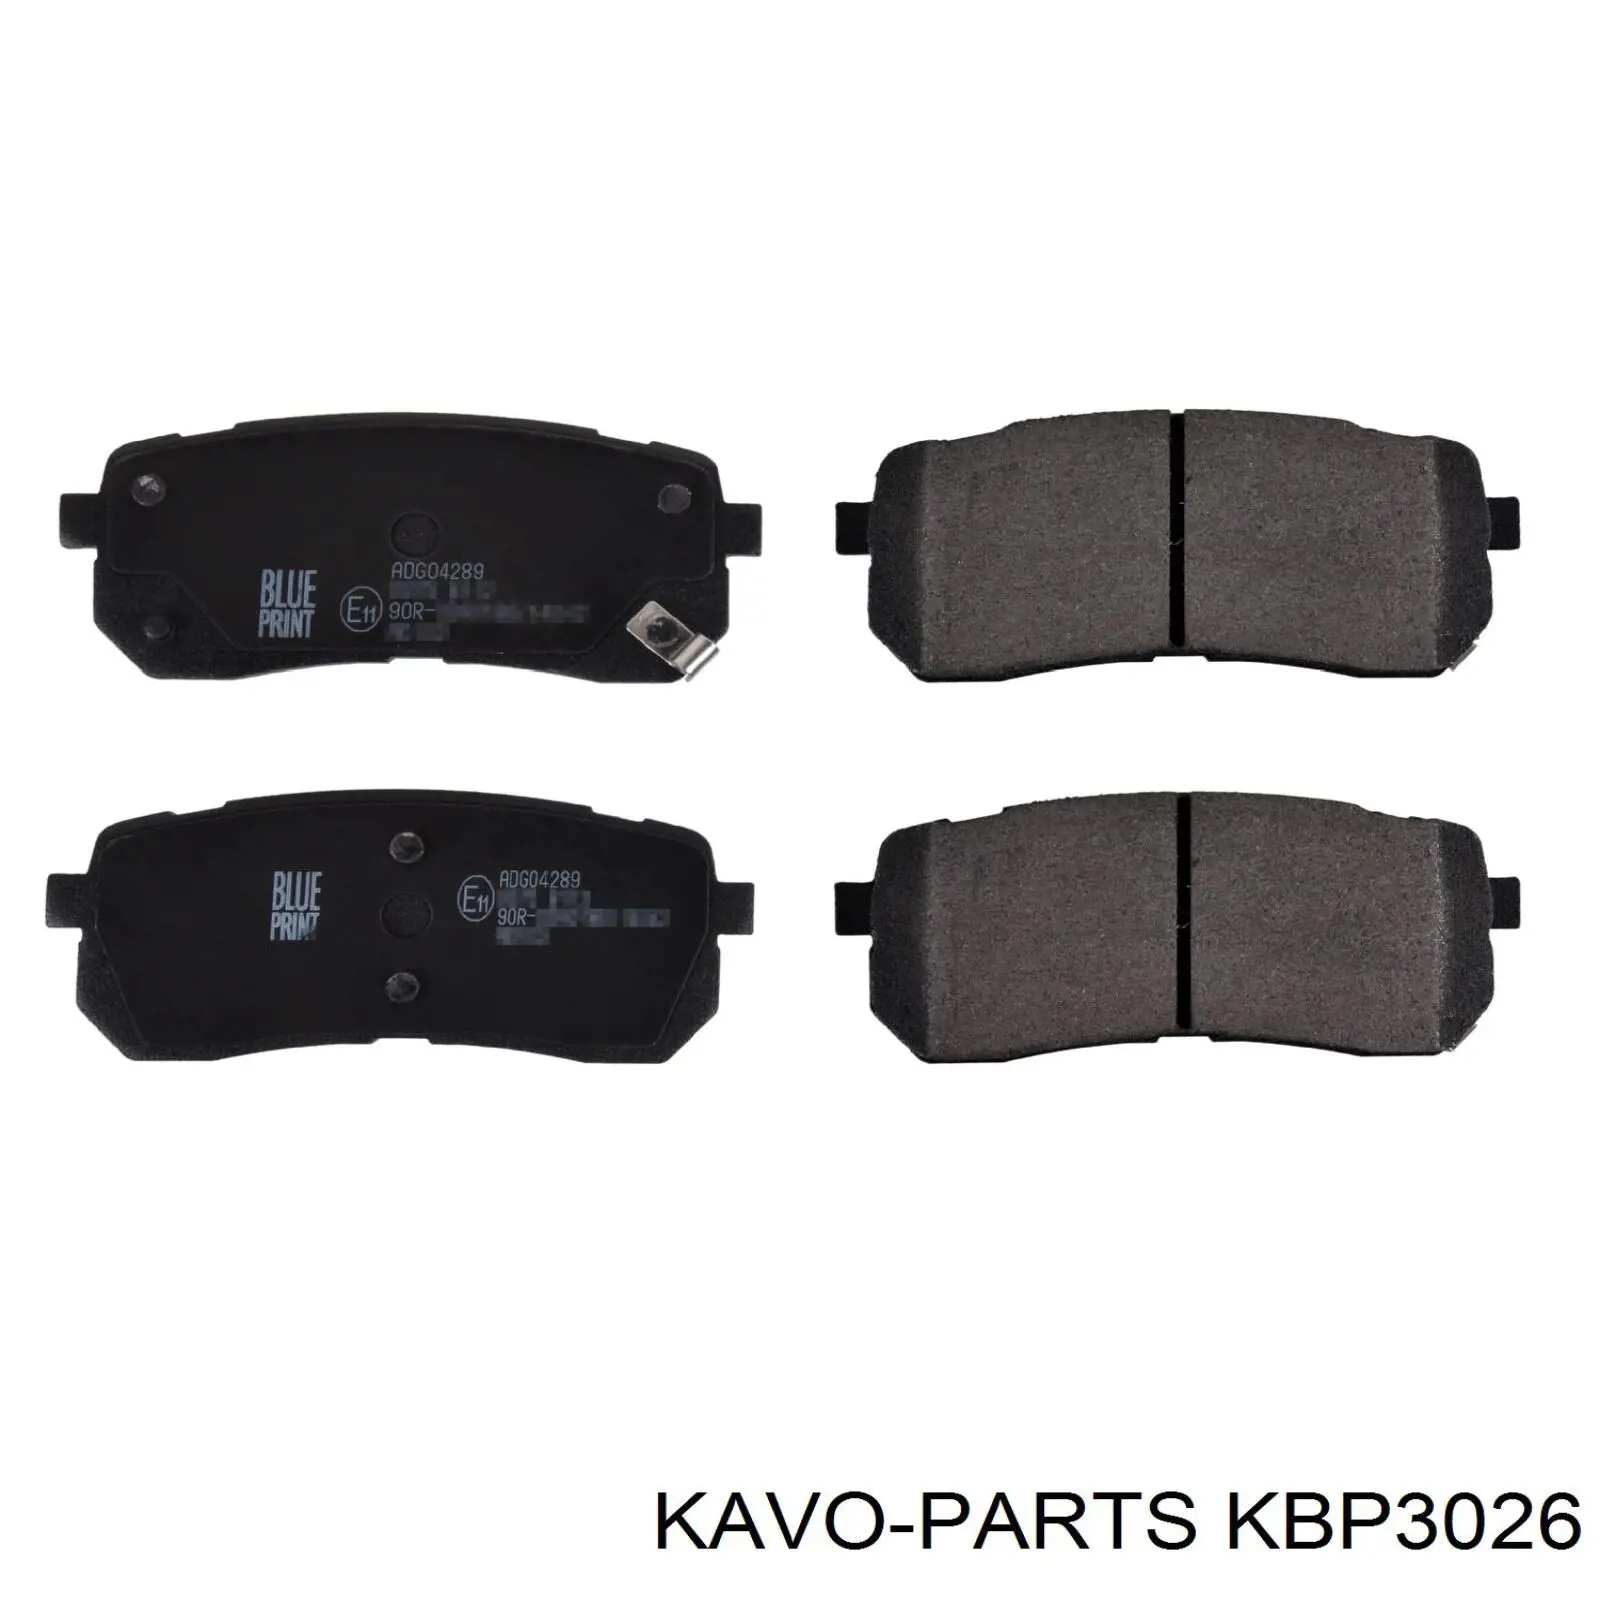 KBP-3026 Kavo Parts pastillas de freno traseras